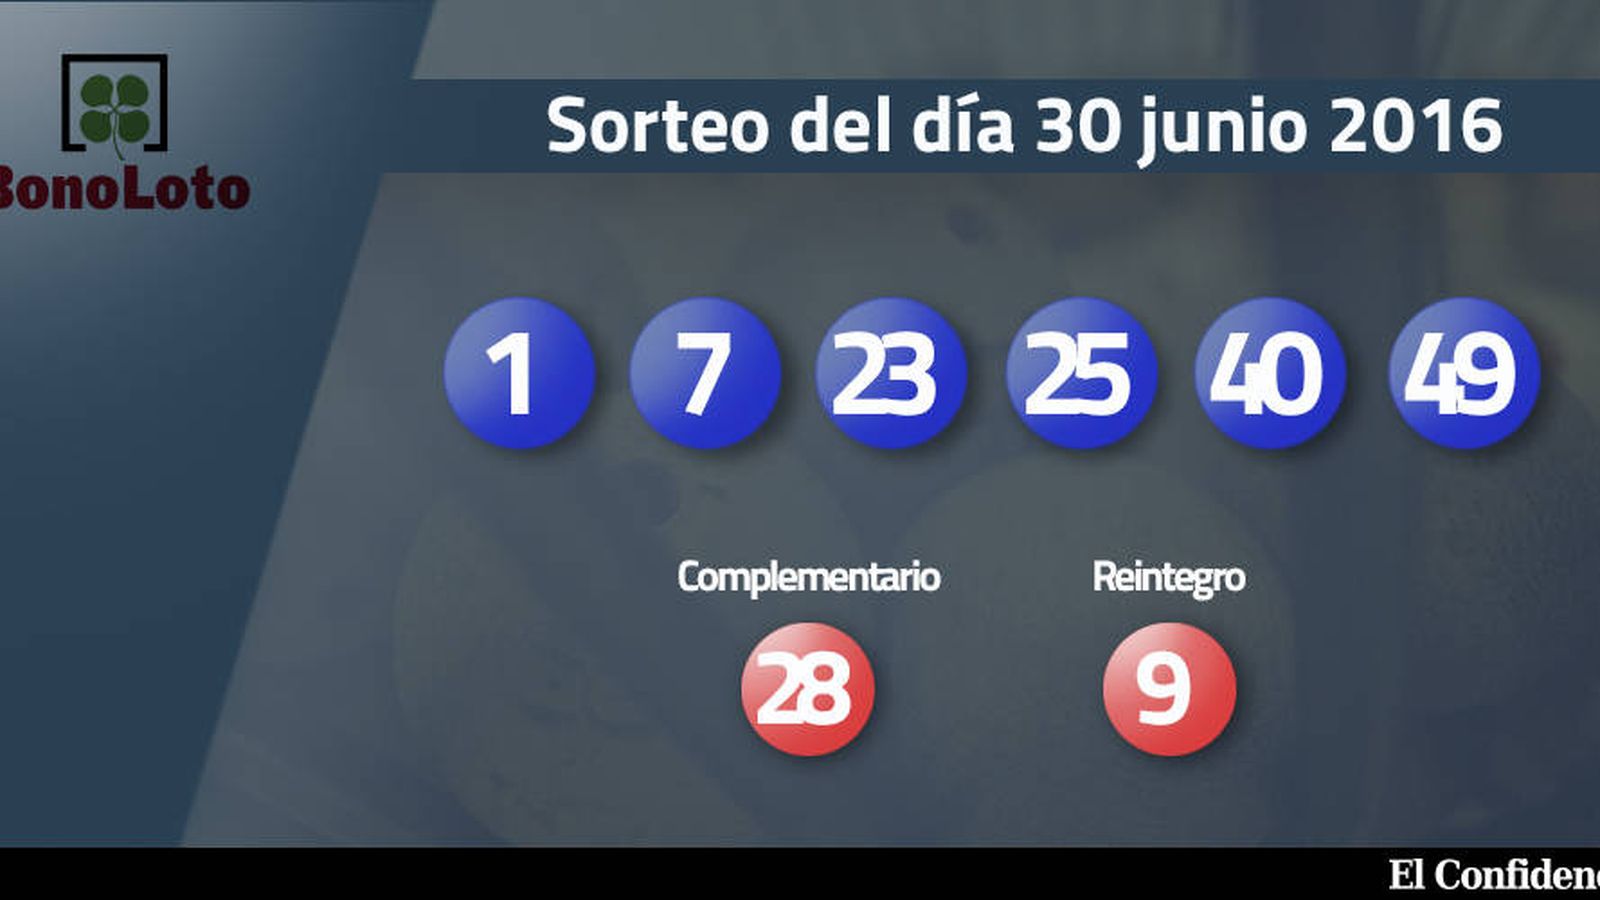 Foto: Resultados del sorteo de la Bonoloto del 30 de junio de 2016 (EC)